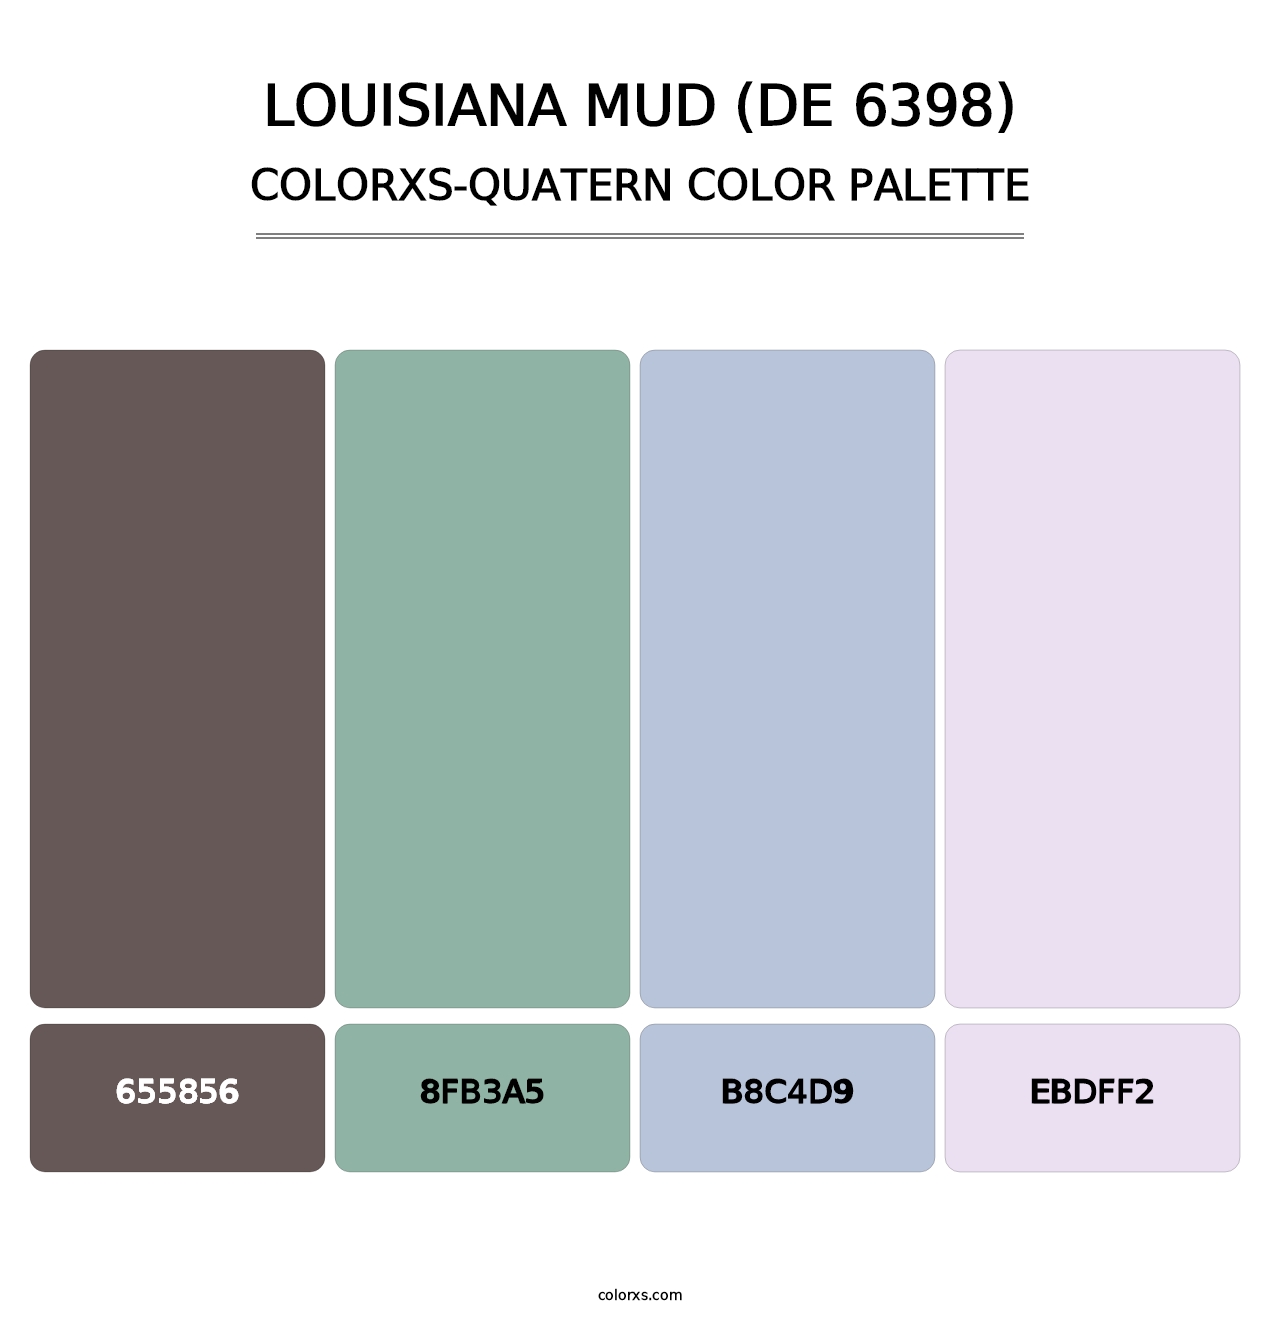 Louisiana Mud (DE 6398) - Colorxs Quatern Palette